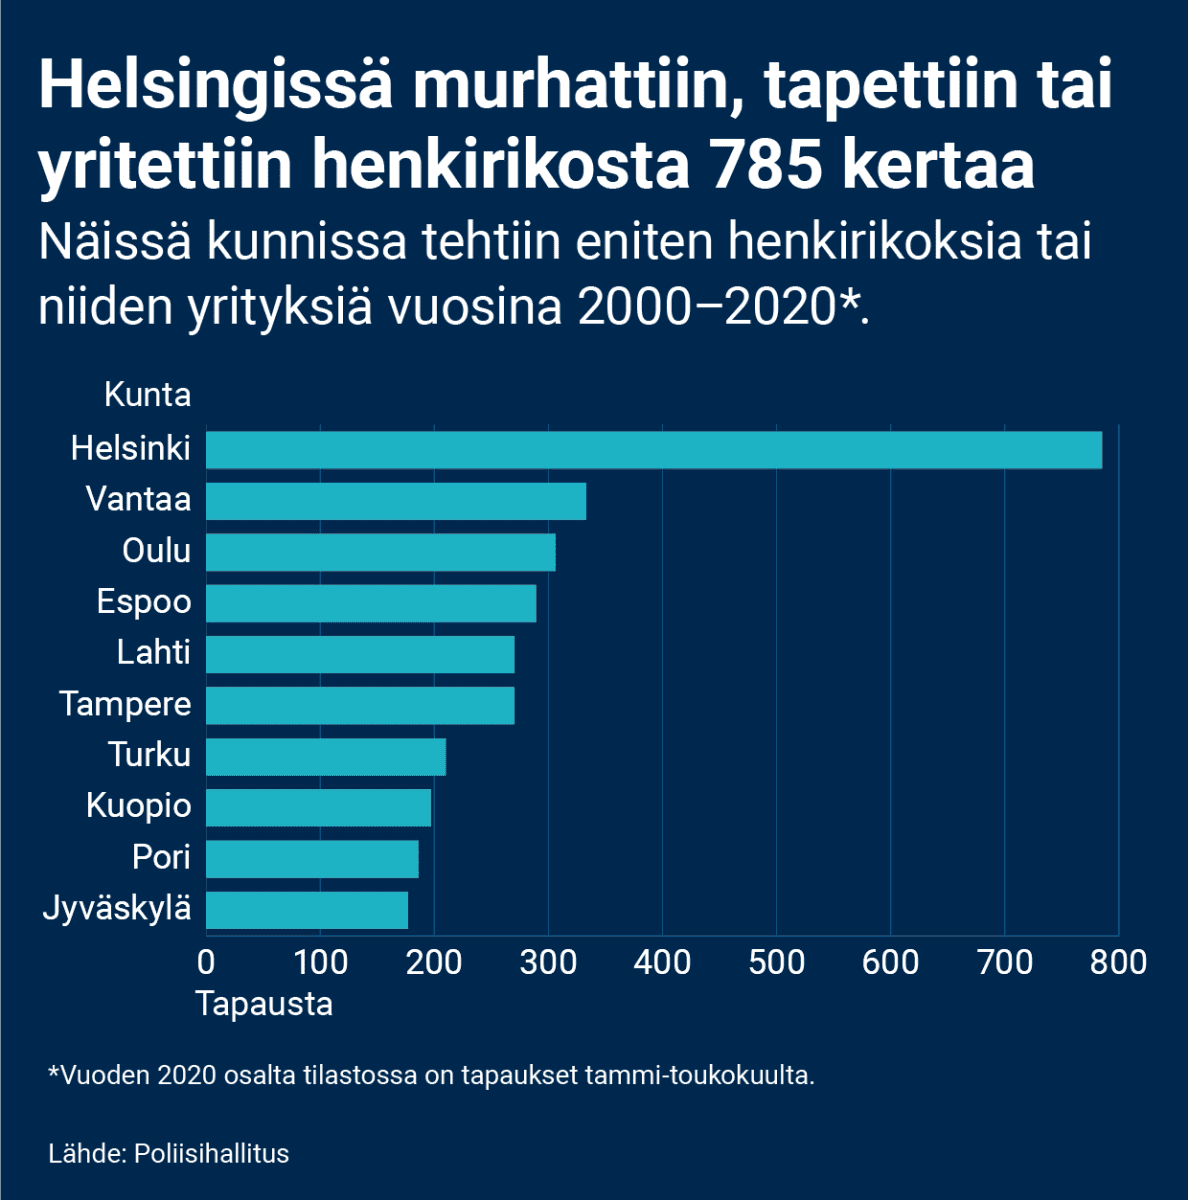 Palkkigrafiikka, joka näyttää 10 kuntaa, joissa tehtiin eniten henkirikoksia tai niiden yrityksiä vuosina 2000–2020. Vuoden 2020 osalta tilastossa on tapaukset tammi-toukokuulta. Helsingissä murhattiin, tapettiin tai yritettiin henkirikosta eniten, 785 kertaa. Seuraavina tilastoissa ovat Vantaa (333), Oulu (306), Espoo (289), Lahti (270), Tampere (270), Turku (210), Kuopio (197), Pori (186) ja Jyväskylä (177).